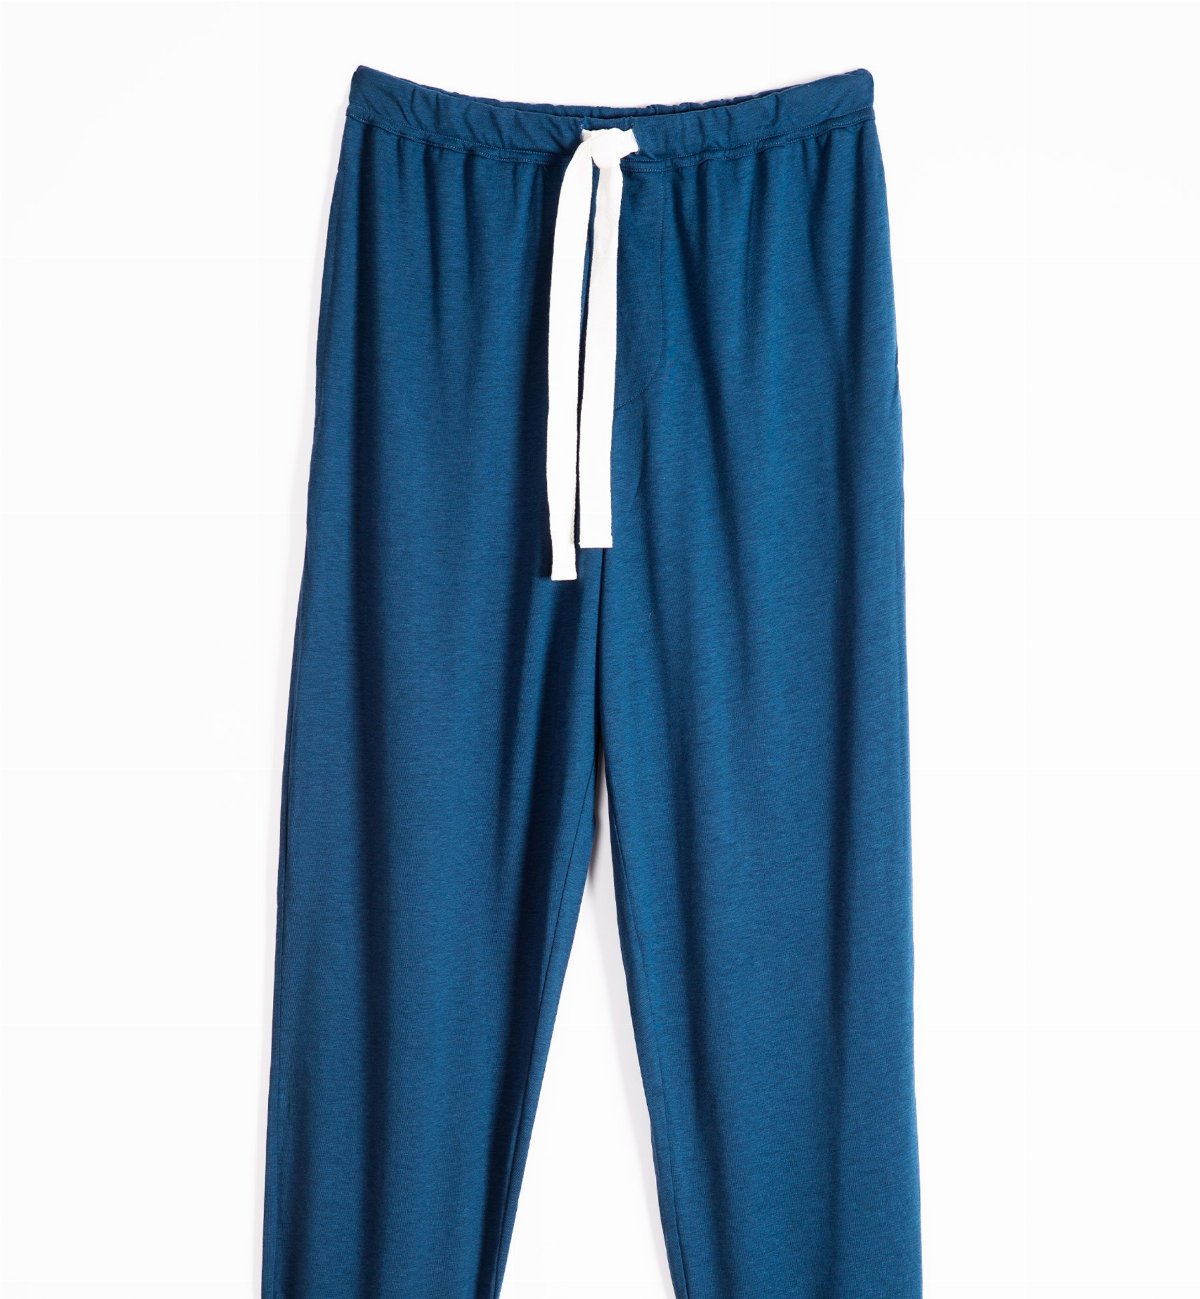 ≫ Pijama Azul de Algodón Orgánico Hombre ✔️100% Ecológico